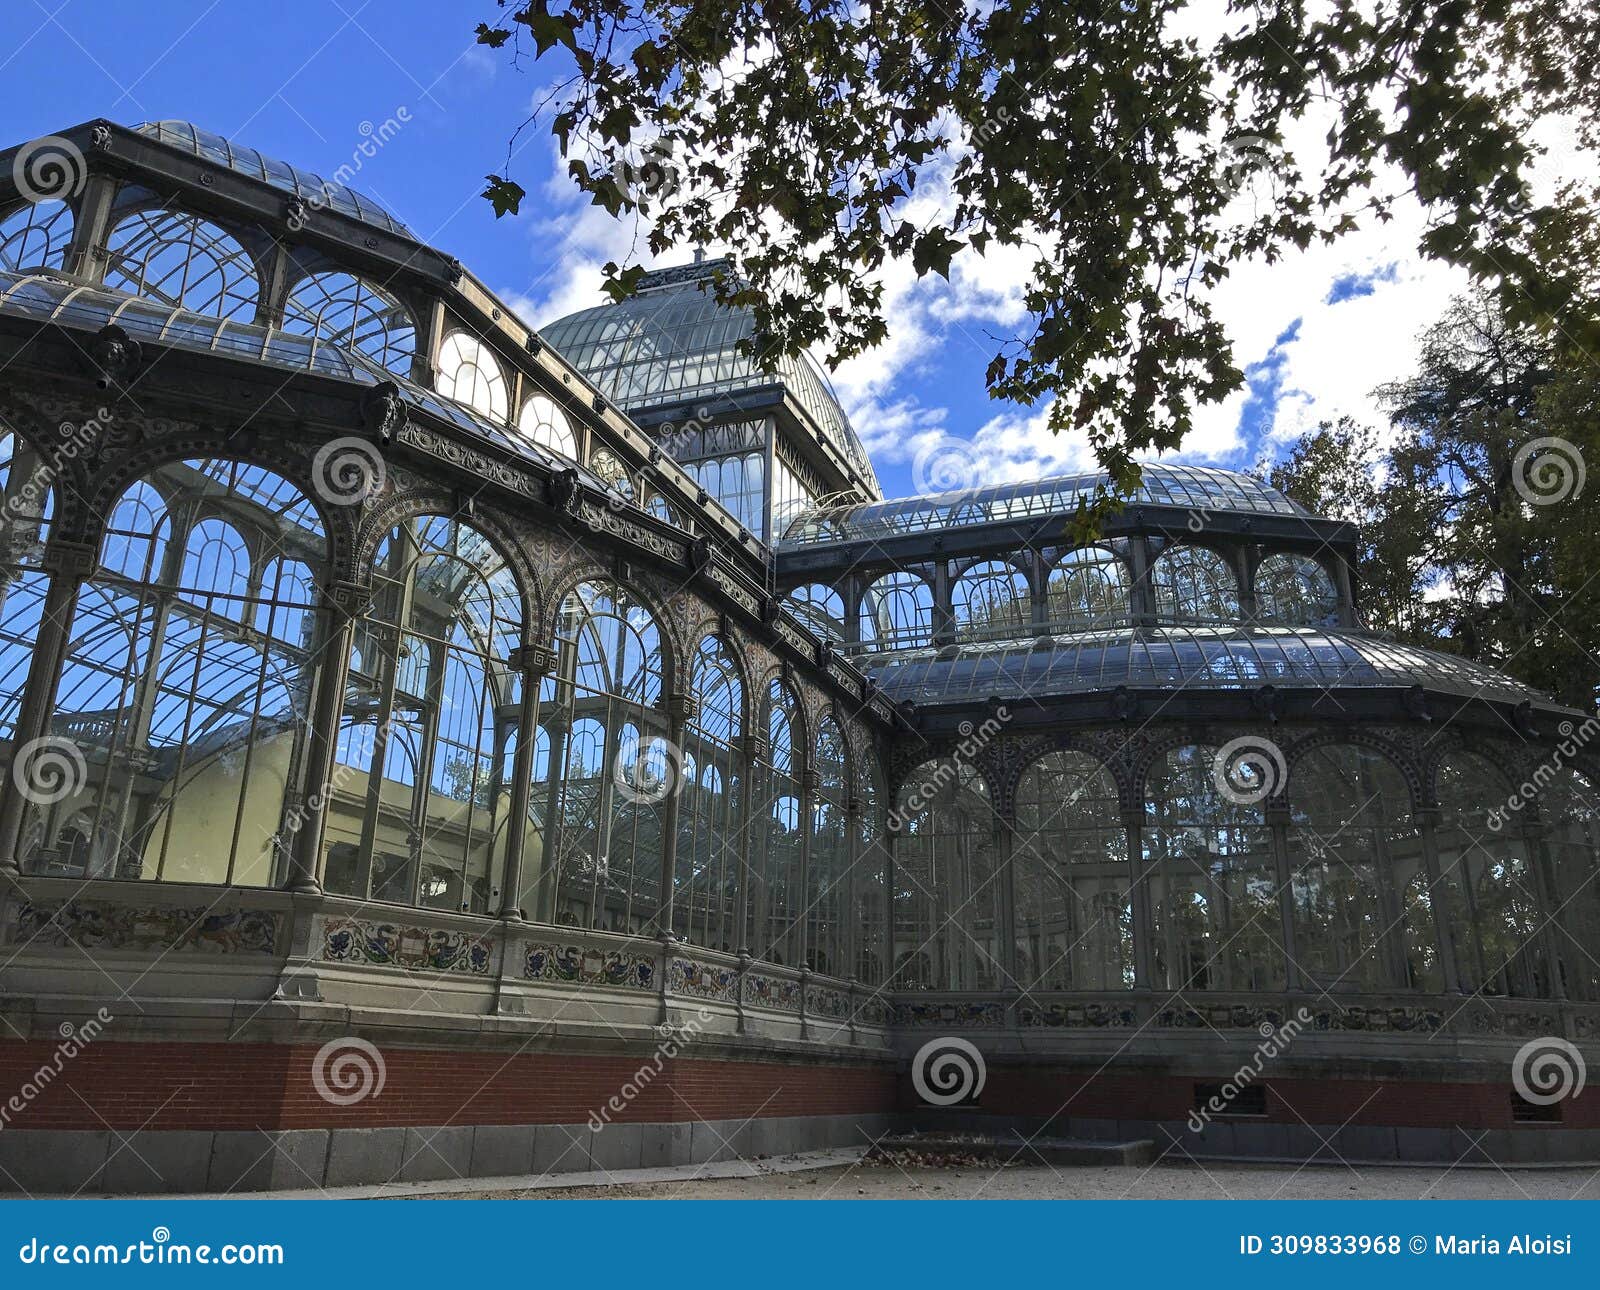 palacio de cristal, originally a greenhouse, located in the de el retiro park in madrid, spainp